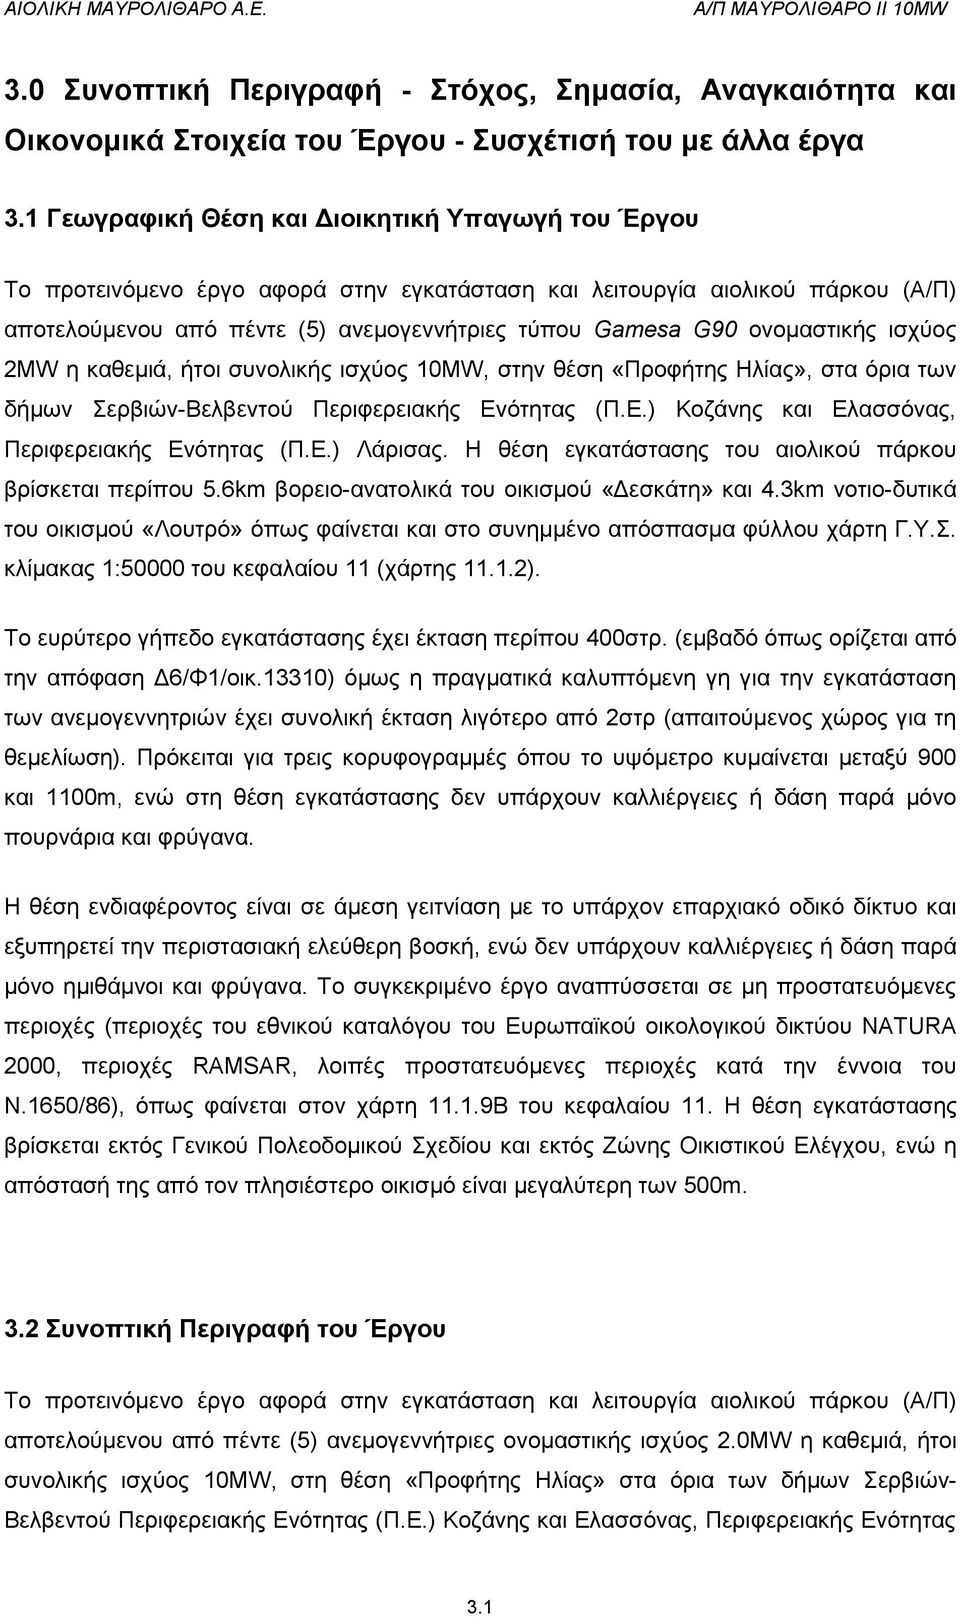 ονομαστικής ισχύος 2MW η καθεμιά, ήτοι συνολικής ισχύος 10ΜW, στην θέση «Προφήτης Ηλίας», στα όρια των δήμων Σερβιών-Βελβεντού Περιφερειακής Ενότητας (Π.Ε.) Κοζάνης και Ελασσόνας, Περιφερειακής Ενότητας (Π.